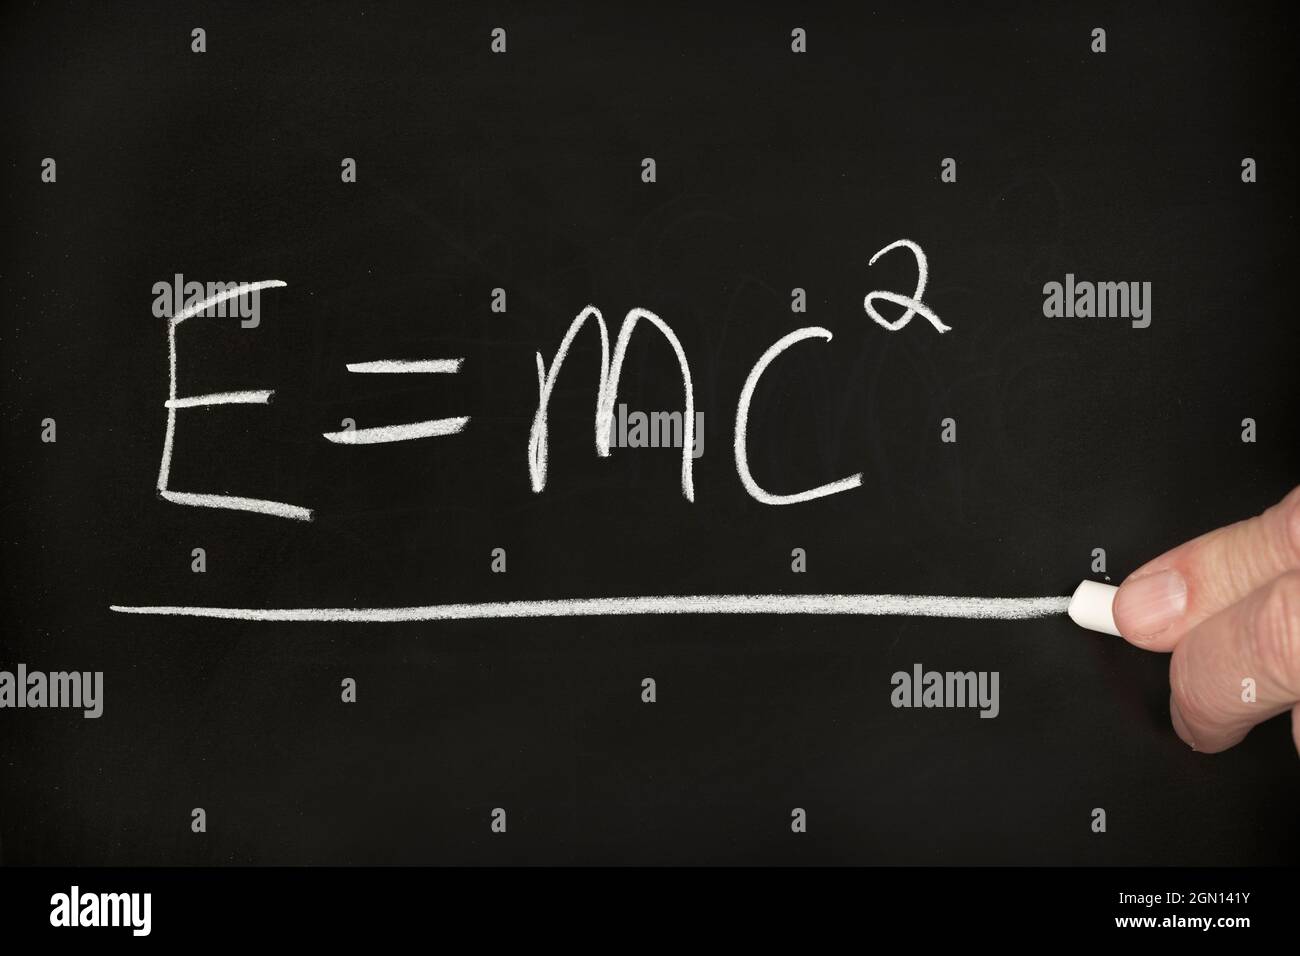 Un professeur écrit la théorie de la relativité équation d'Einstein sur un tableau noir tout en enseignant un groupe d'élèves dans une salle de classe. Banque D'Images